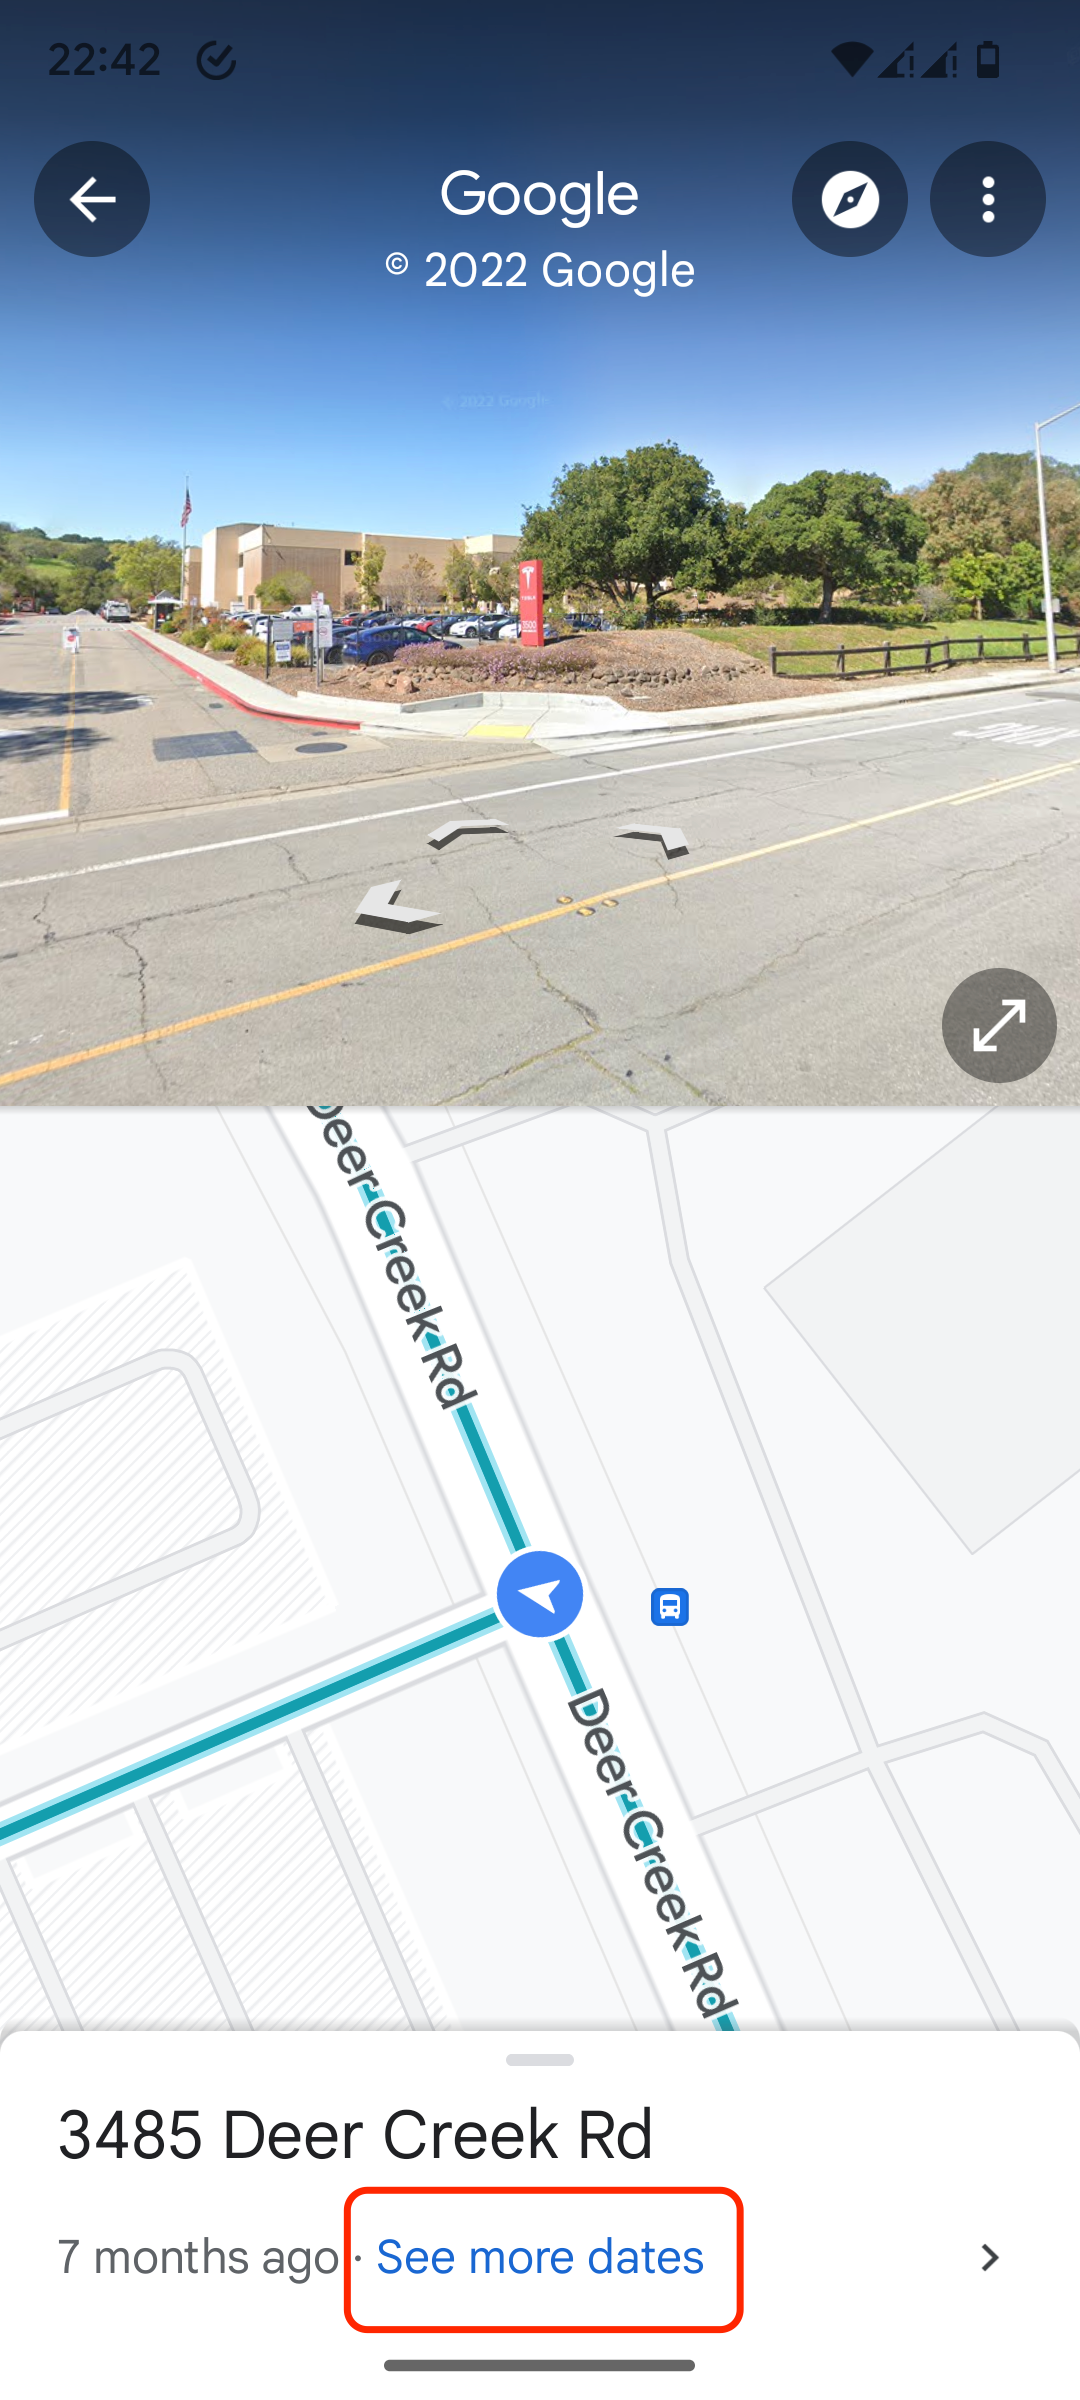 Tocar na seção Ver mais datas revela mais informações sobre um local no aplicativo Google Maps para Android